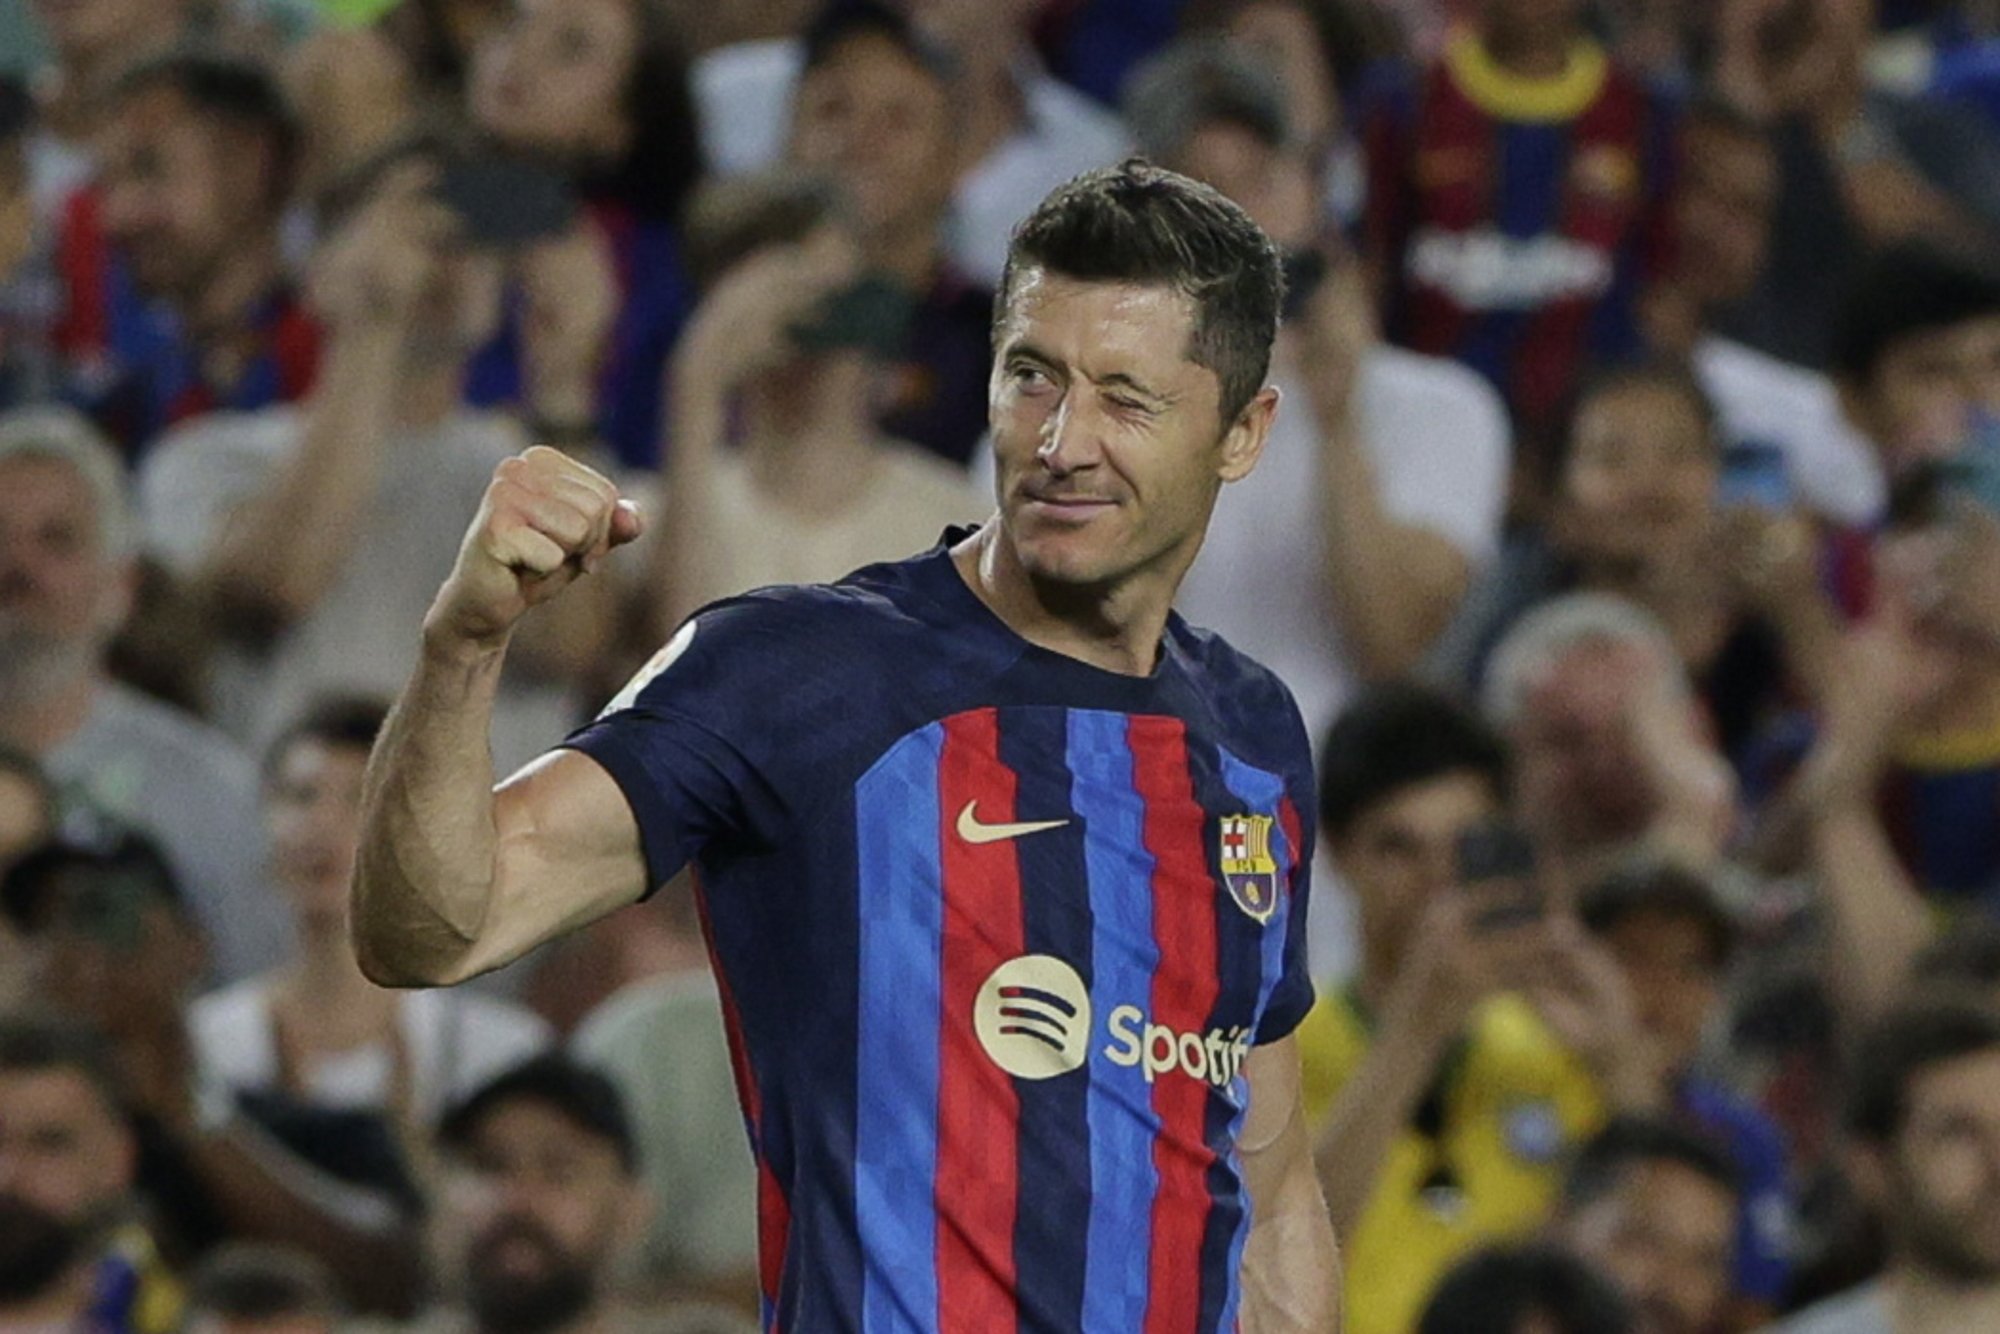 El Barça completa una plantilla per poder somiar en una última jornada frenètica de mercat de fitxatges